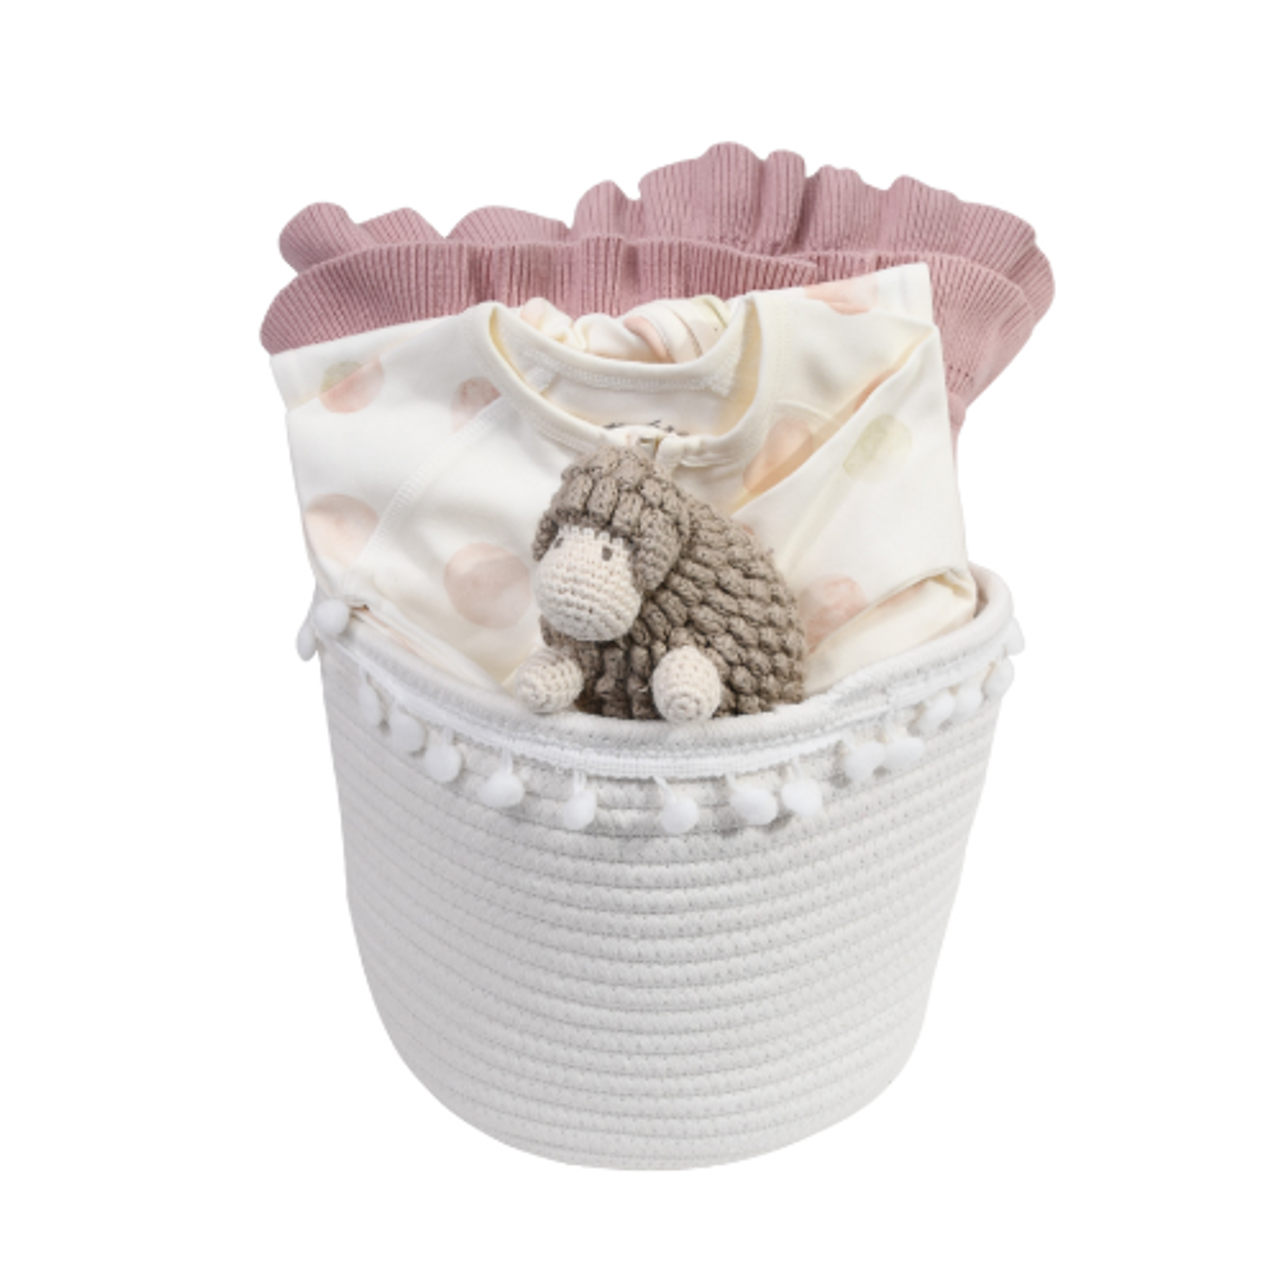 Baby Girl Gift Basket - Mauvelous